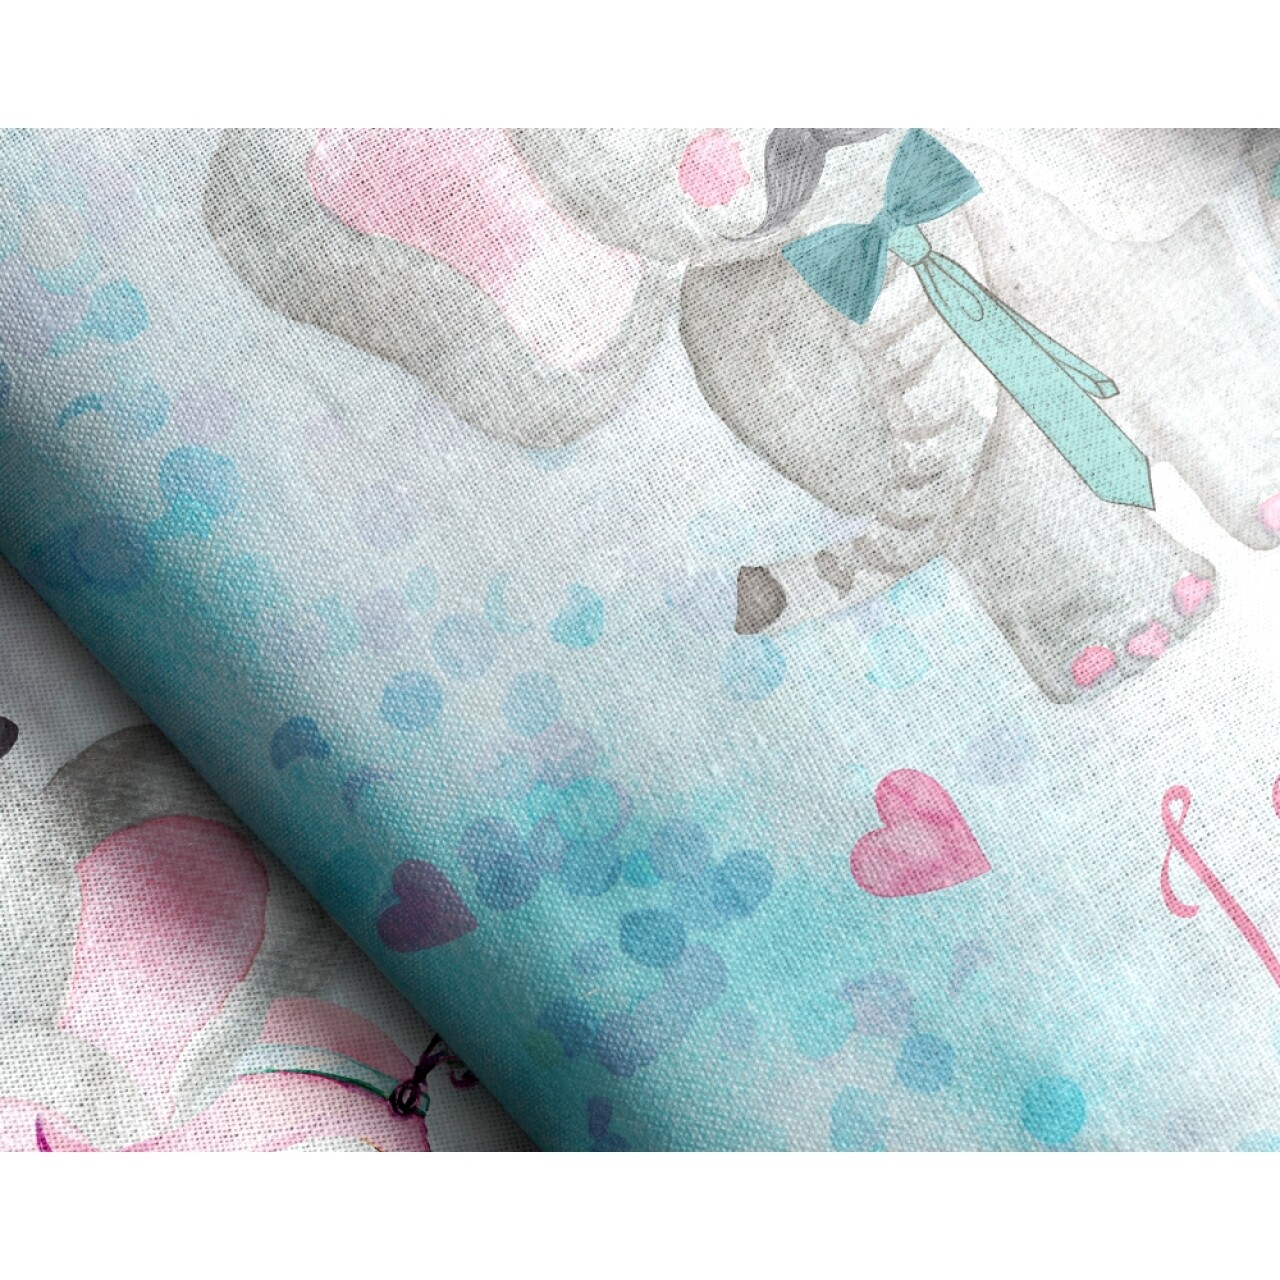 Lenjerie De Pat Pentru O Persoana, Baby Love Multi, Royal Textile, 2 Piese, 140 X 200 Cm, 100% Bumbac, Multicolora